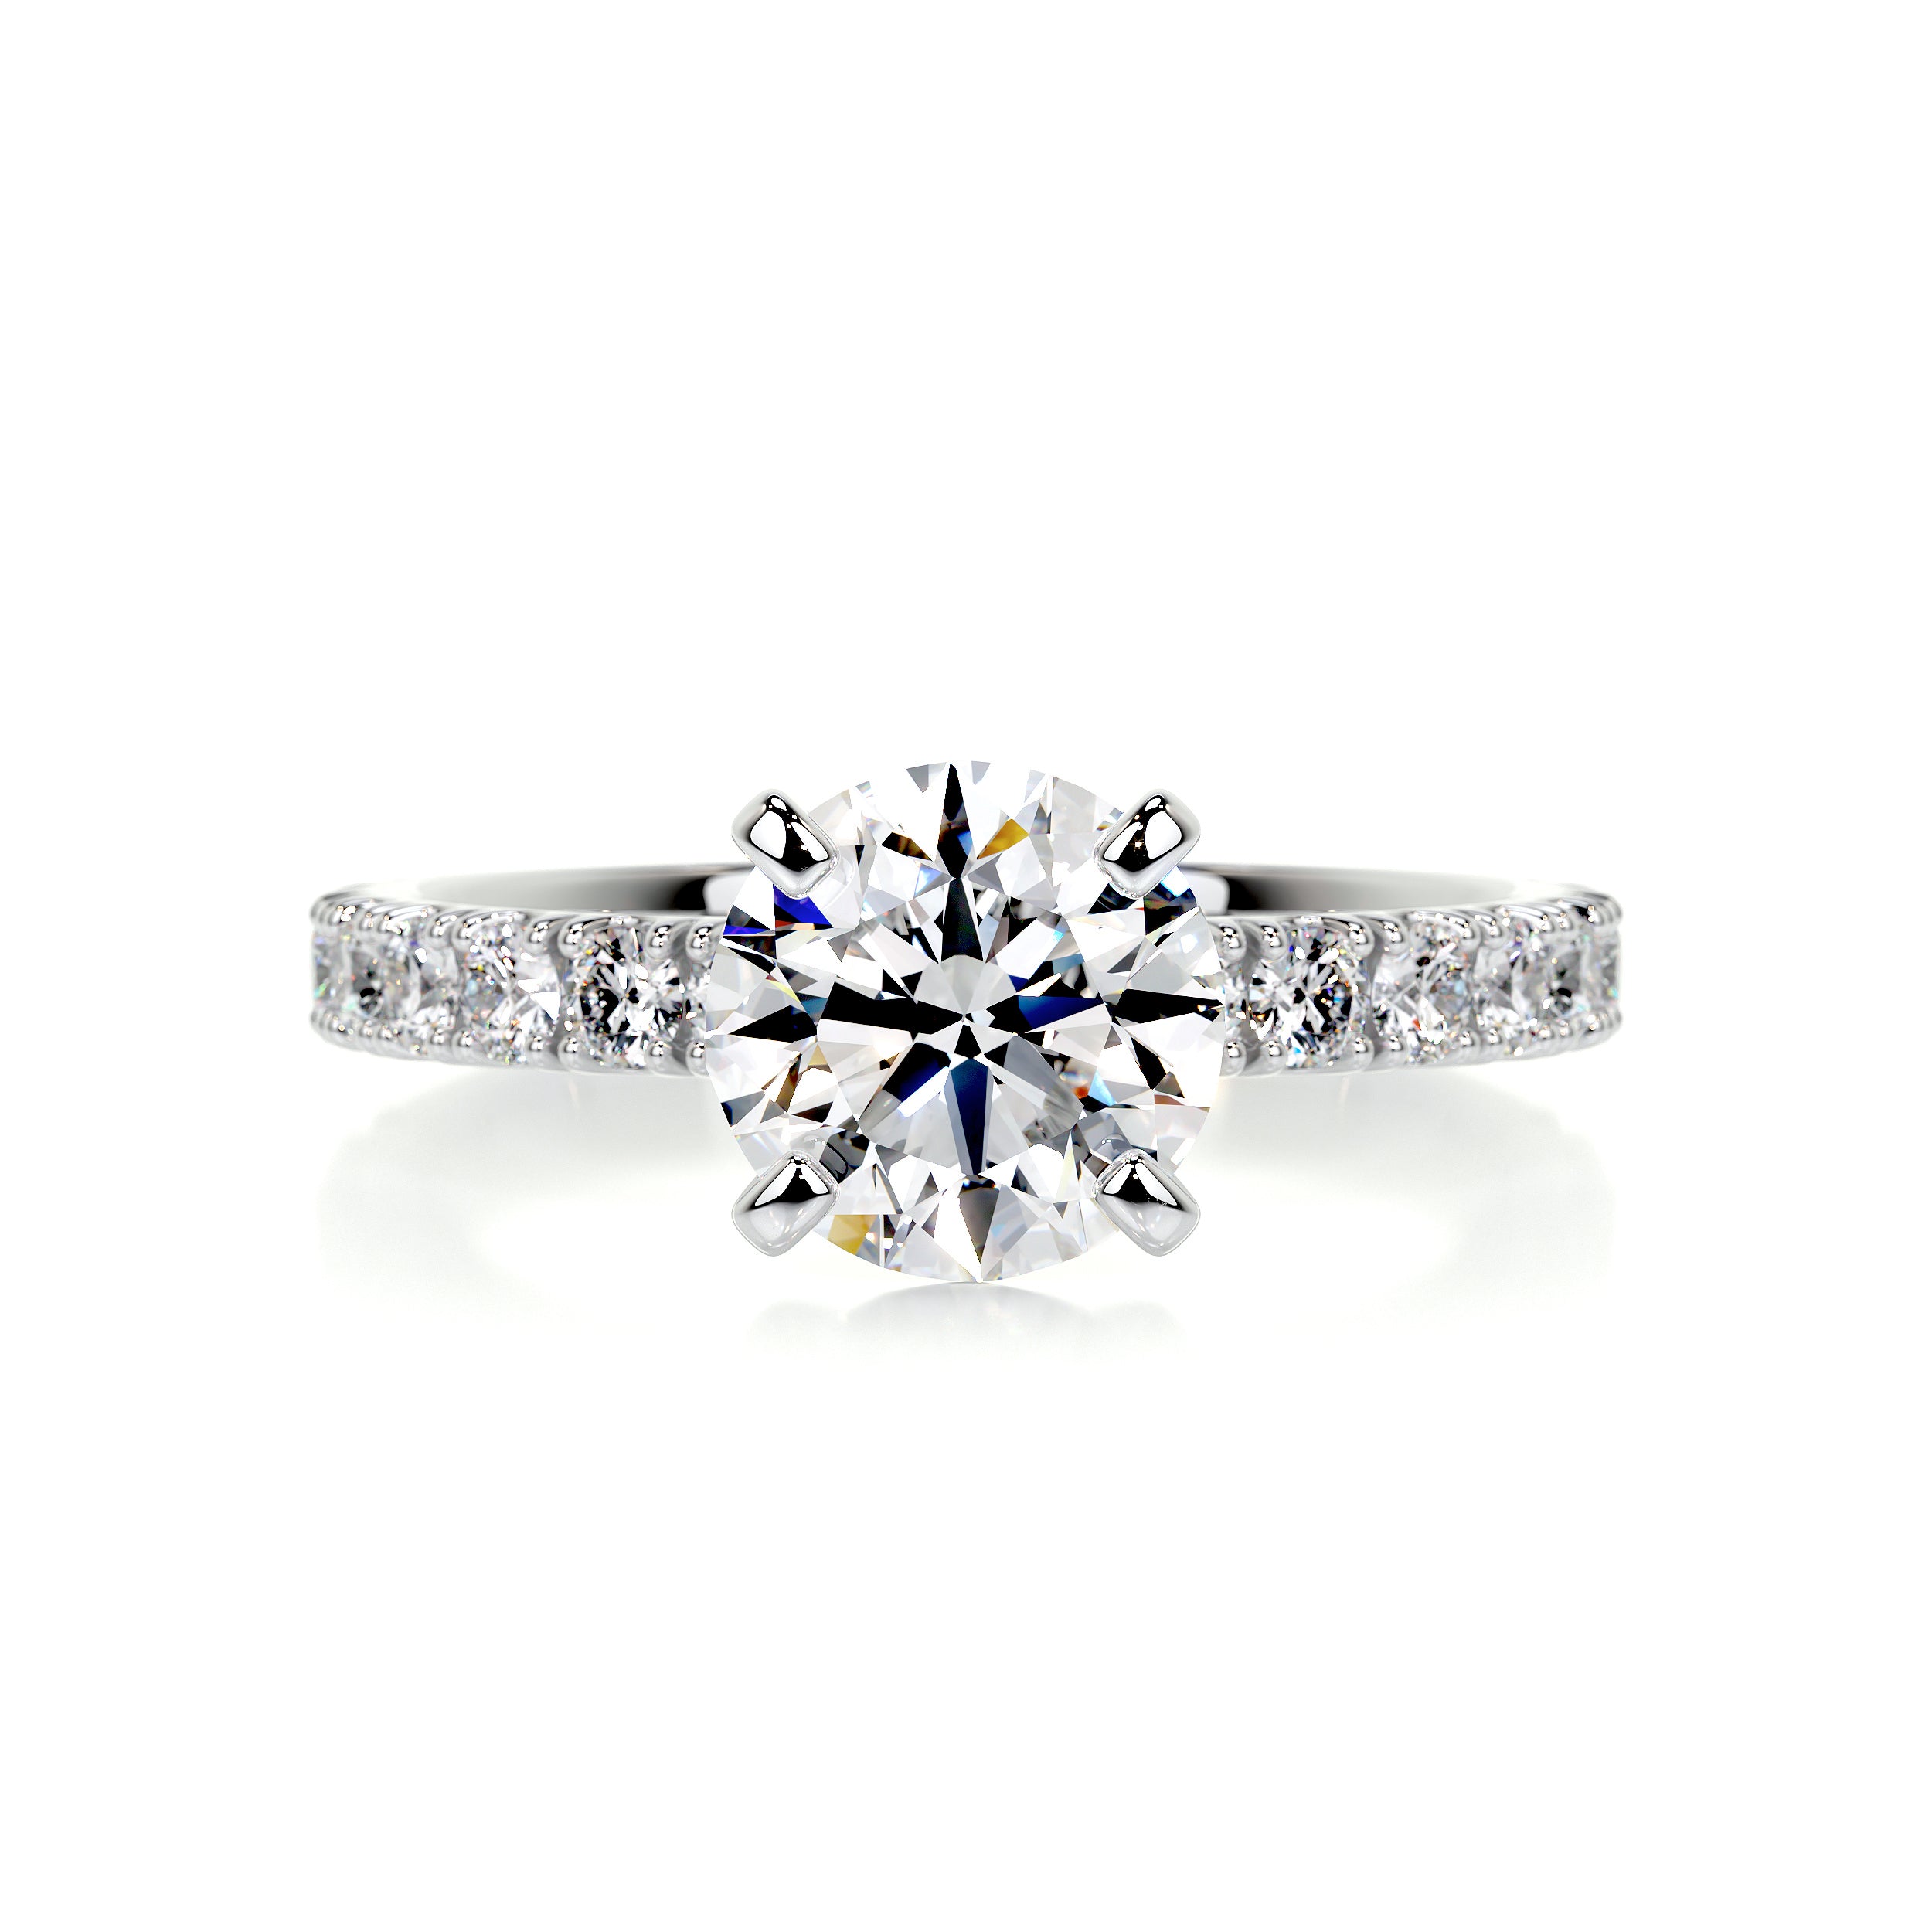 Alison Diamond Engagement Ring   (2 Carat) -Platinum